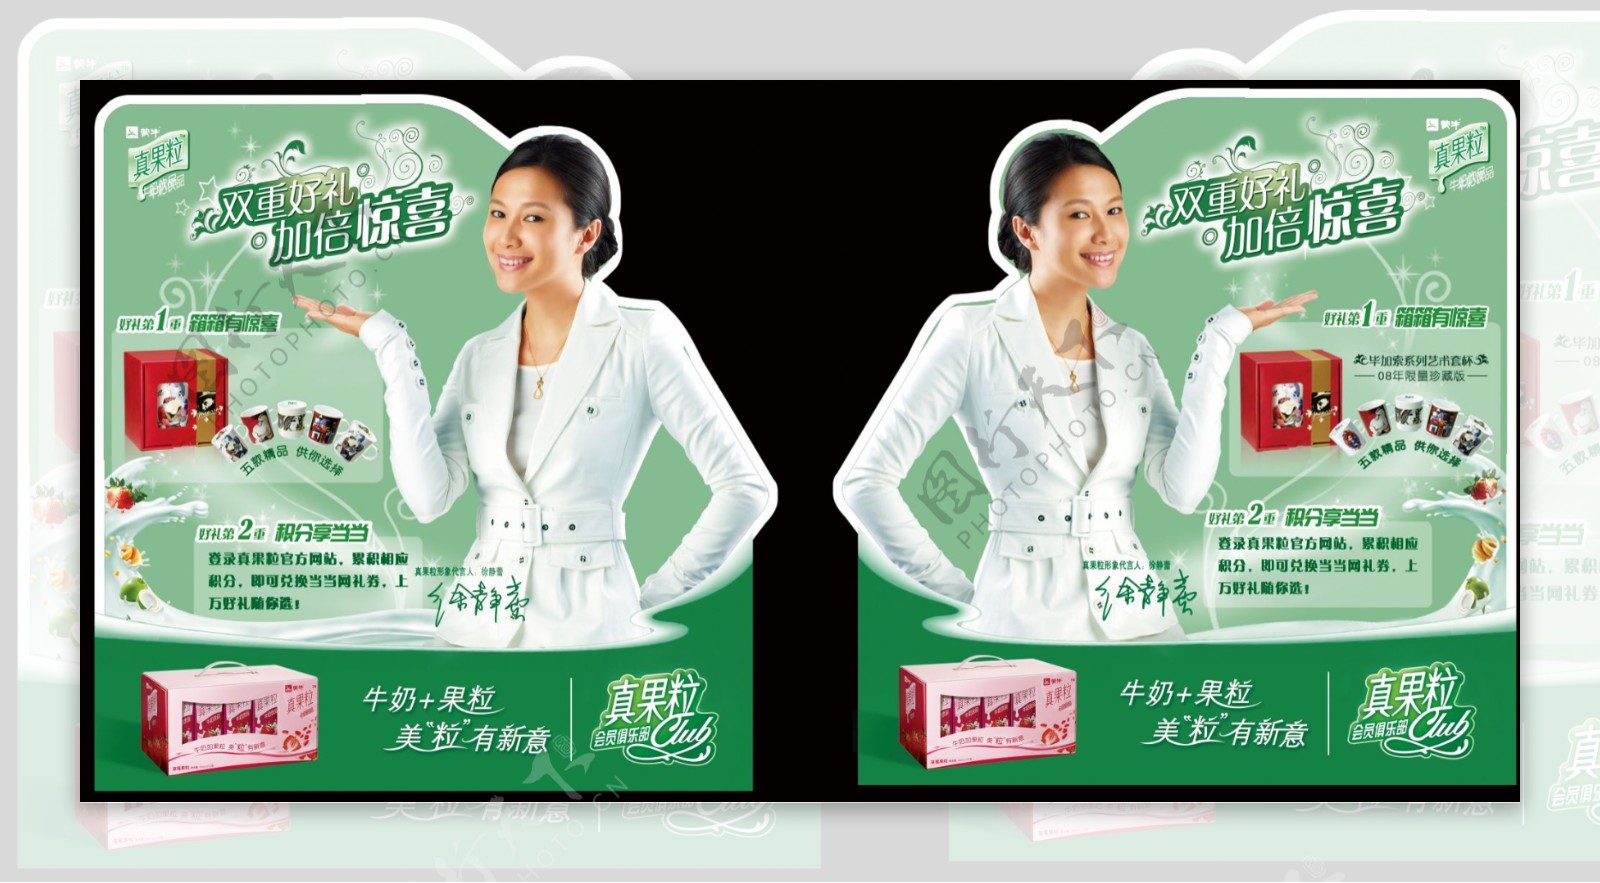 龙腾广告平面广告PSD分层素材源文件饮料牛奶果粒徐静蕾